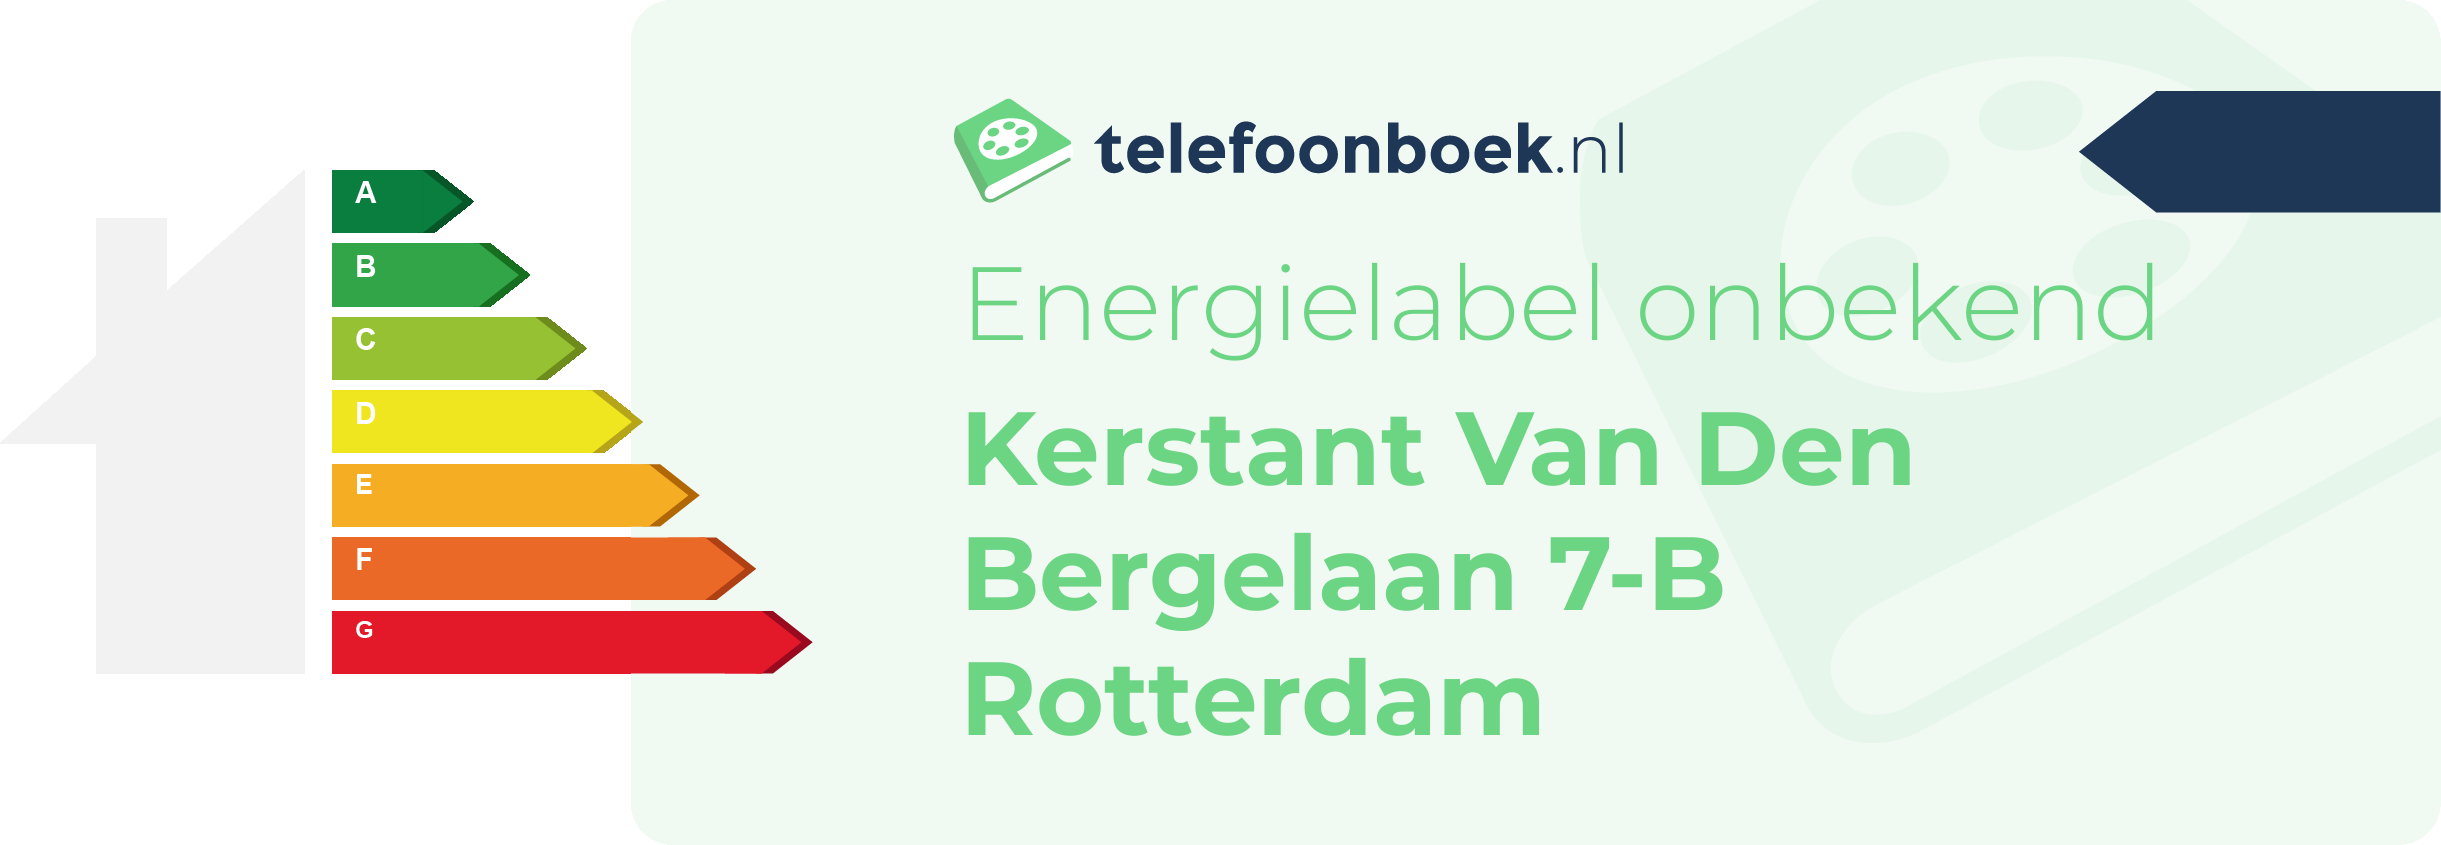 Energielabel Kerstant Van Den Bergelaan 7-B Rotterdam